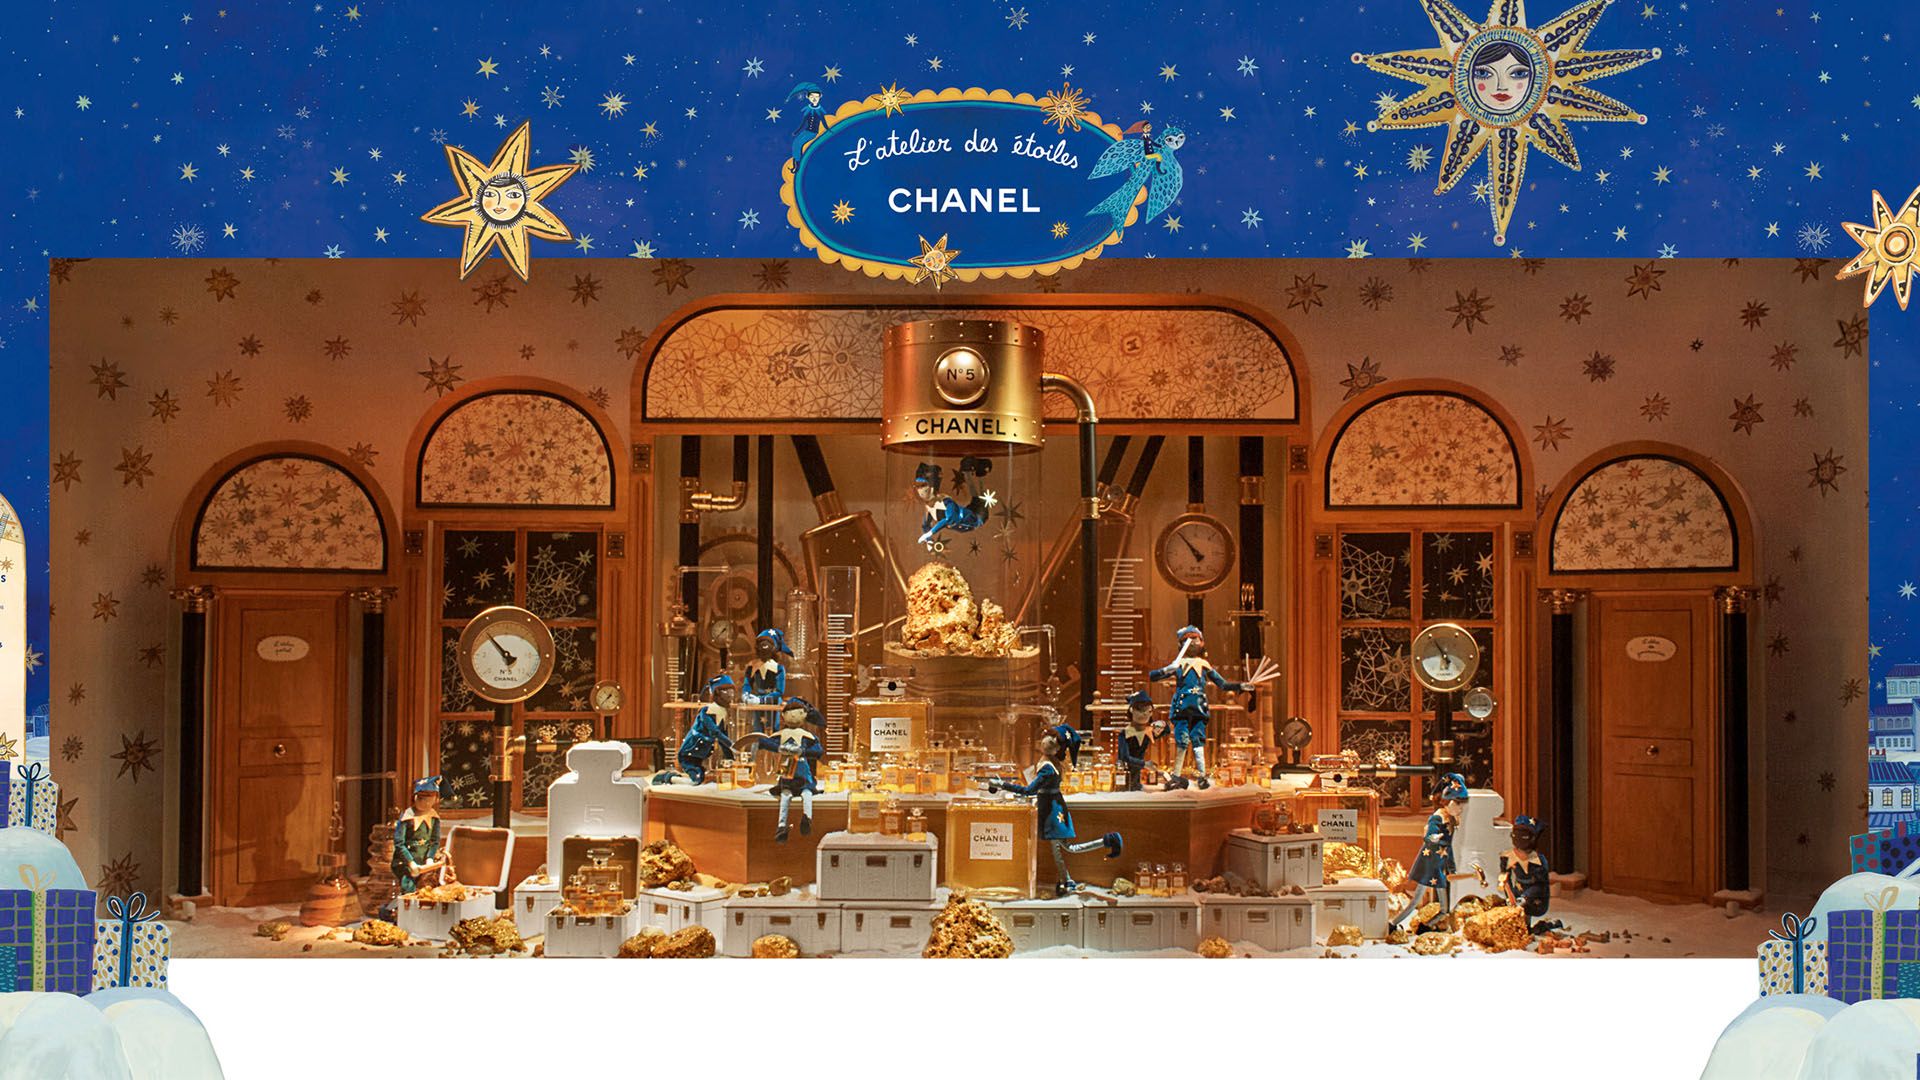 Chanel - Vitrine l'atelier des etoiles